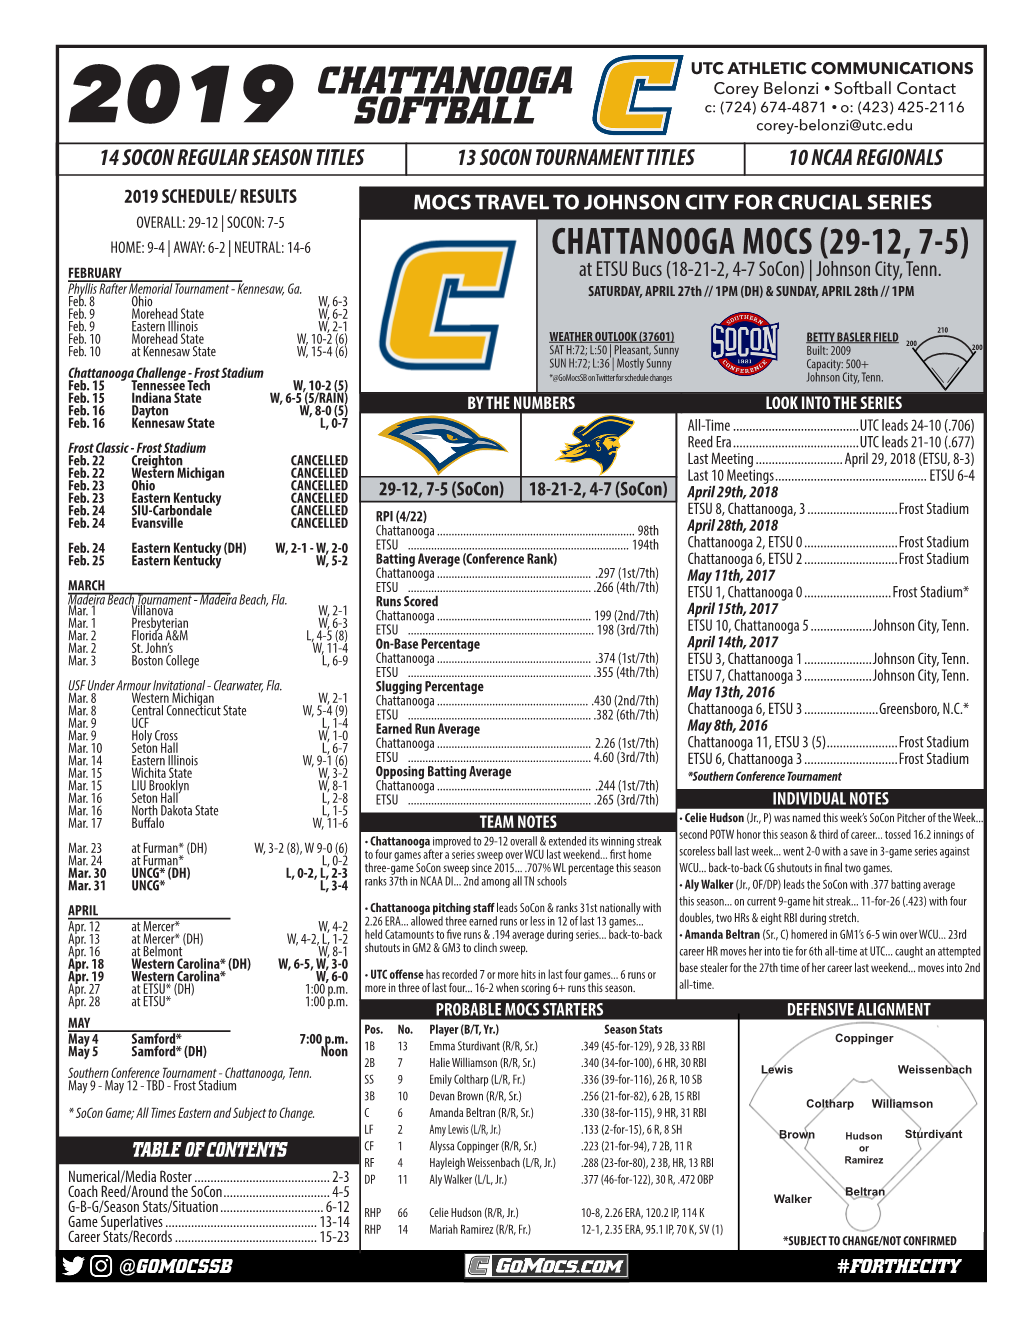 Chattanooga Softball Chattanooga Mocs (29-12, 7-5)